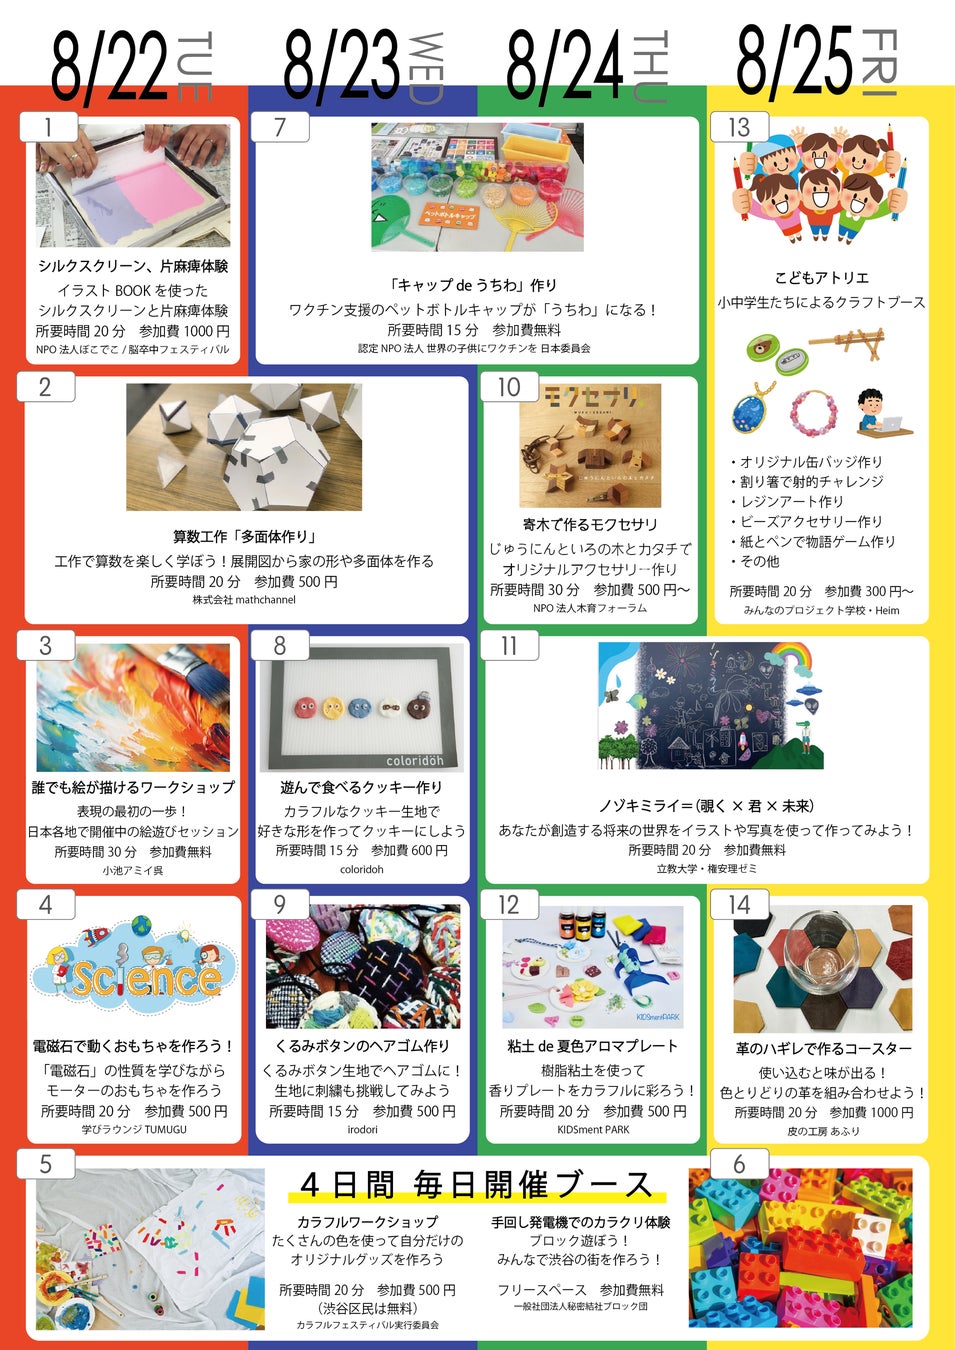 夏休みの自由研究の駆け込み寺！ものづくりワークショップが楽しめる子ども向けイベントを渋谷ヒカリエで開催！